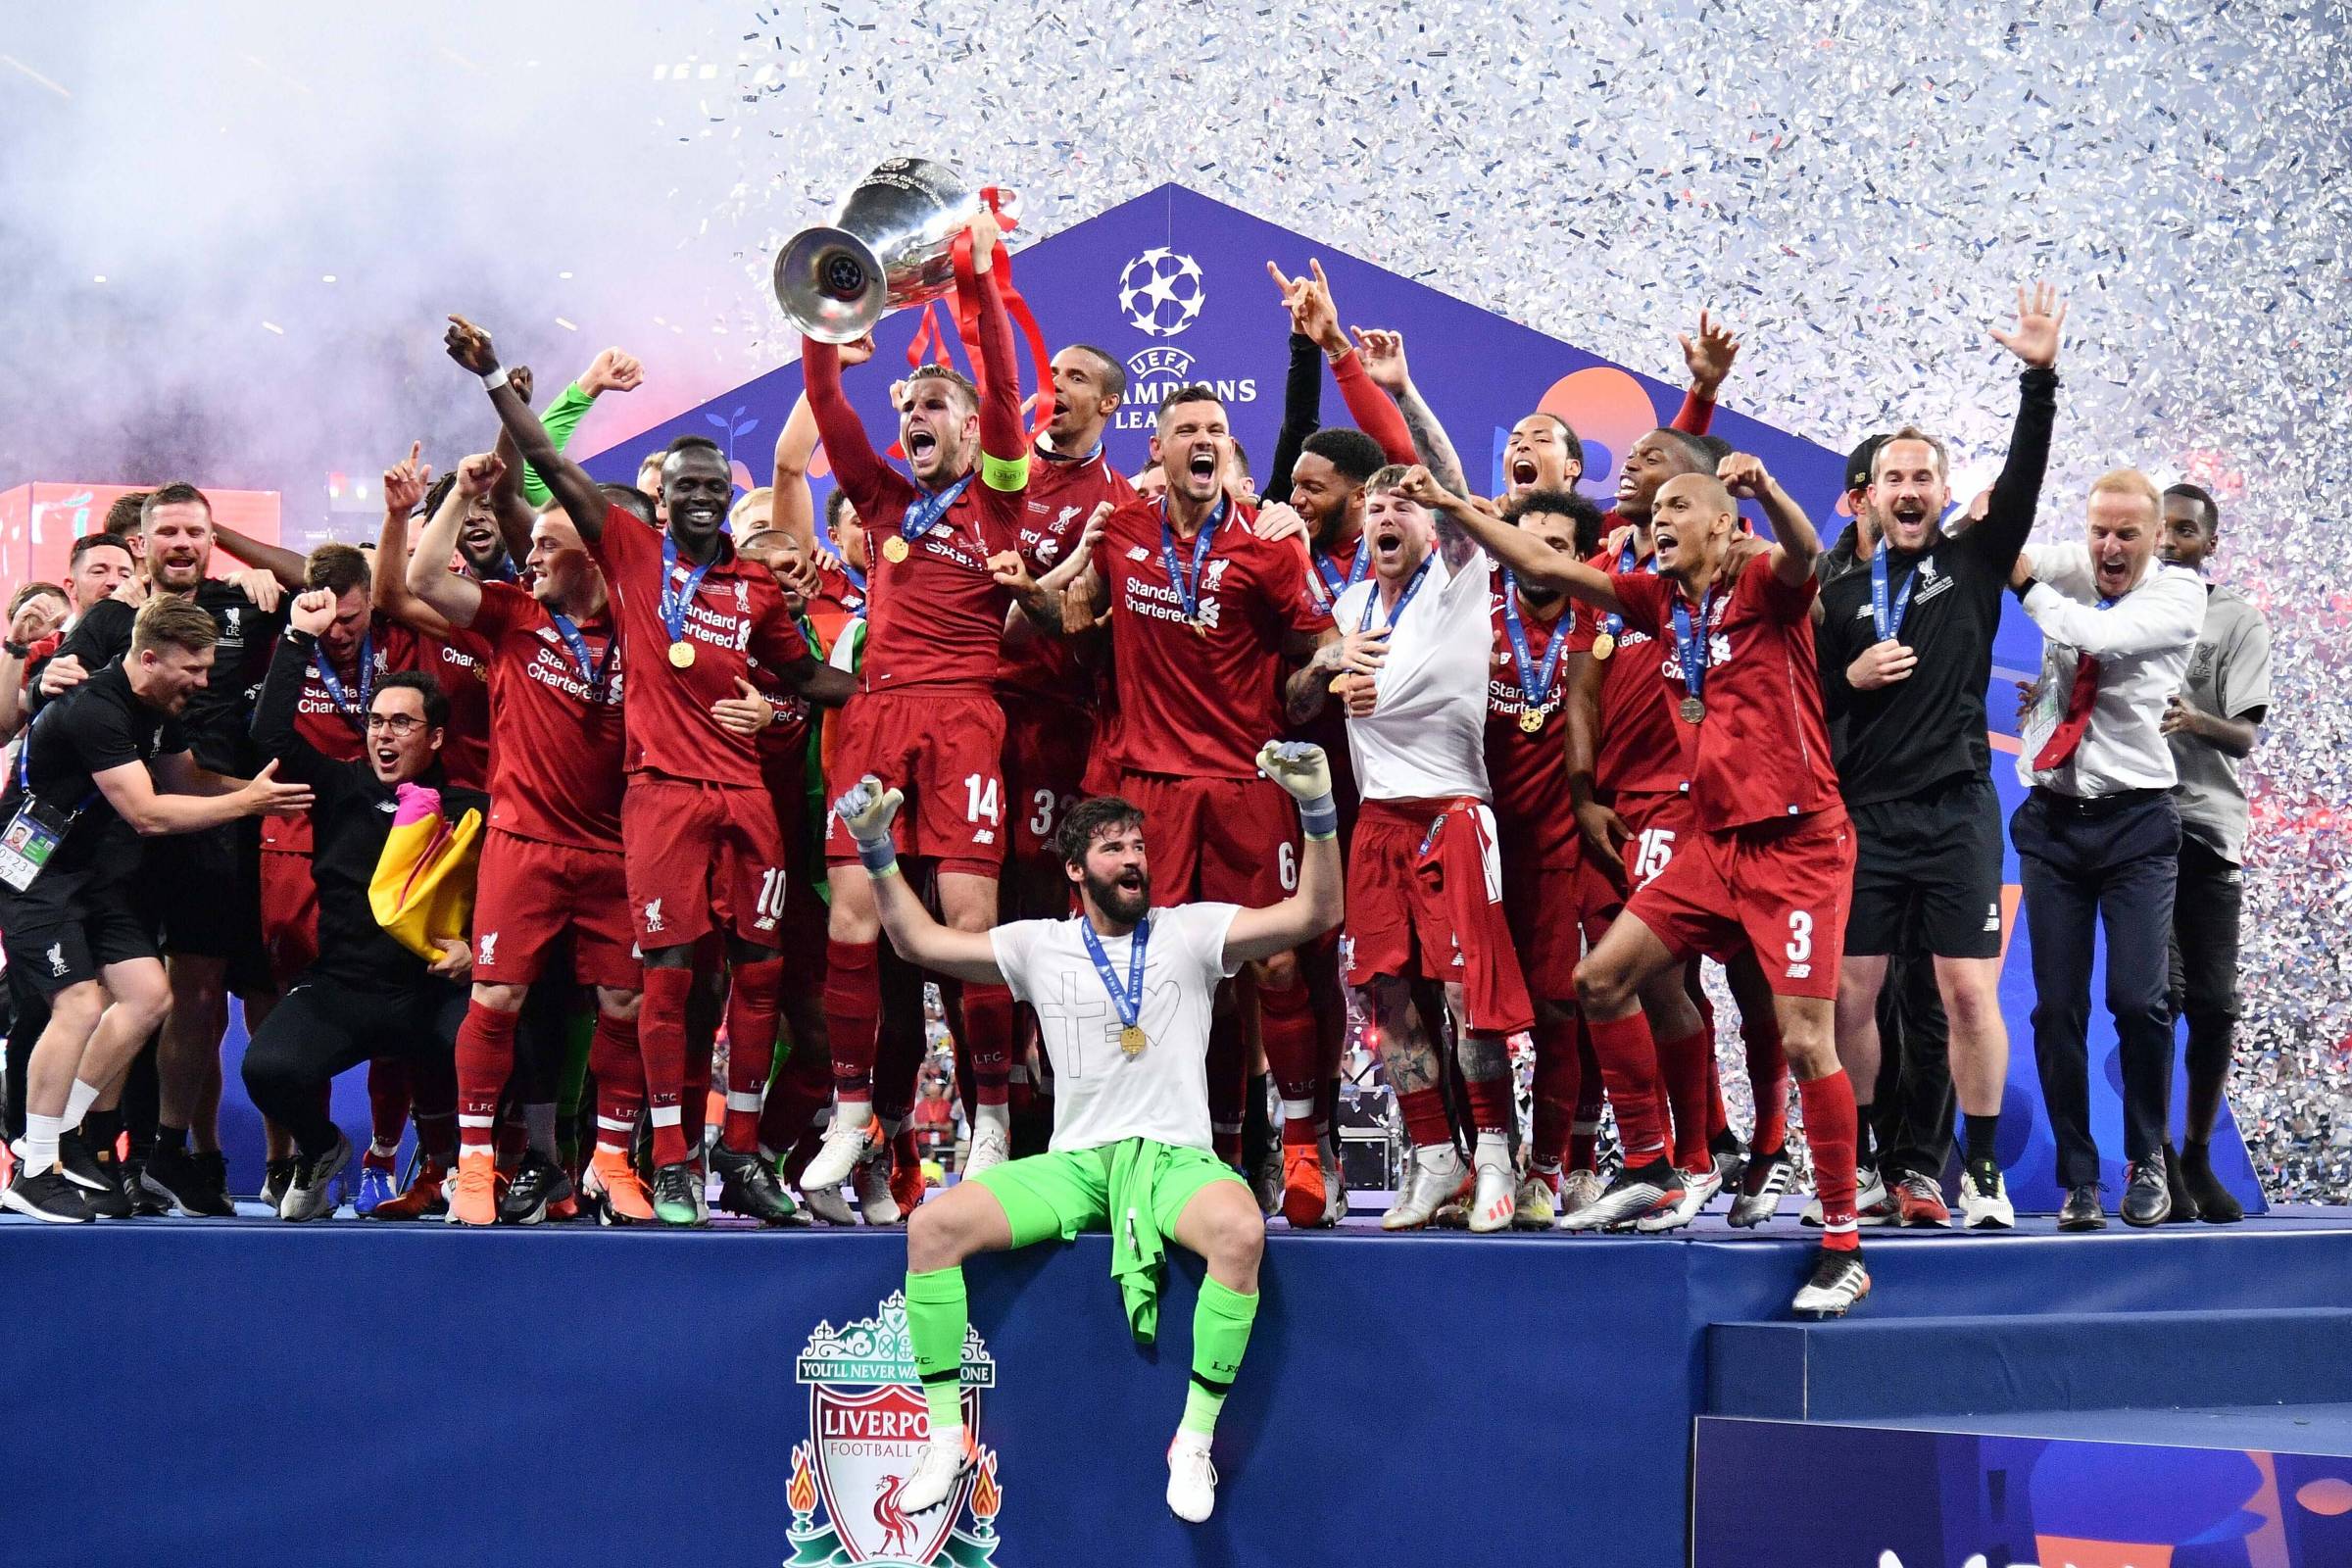 Champions League: tudo sobre os jogos desta quarta - Turista FC -  Experiências Esportivas